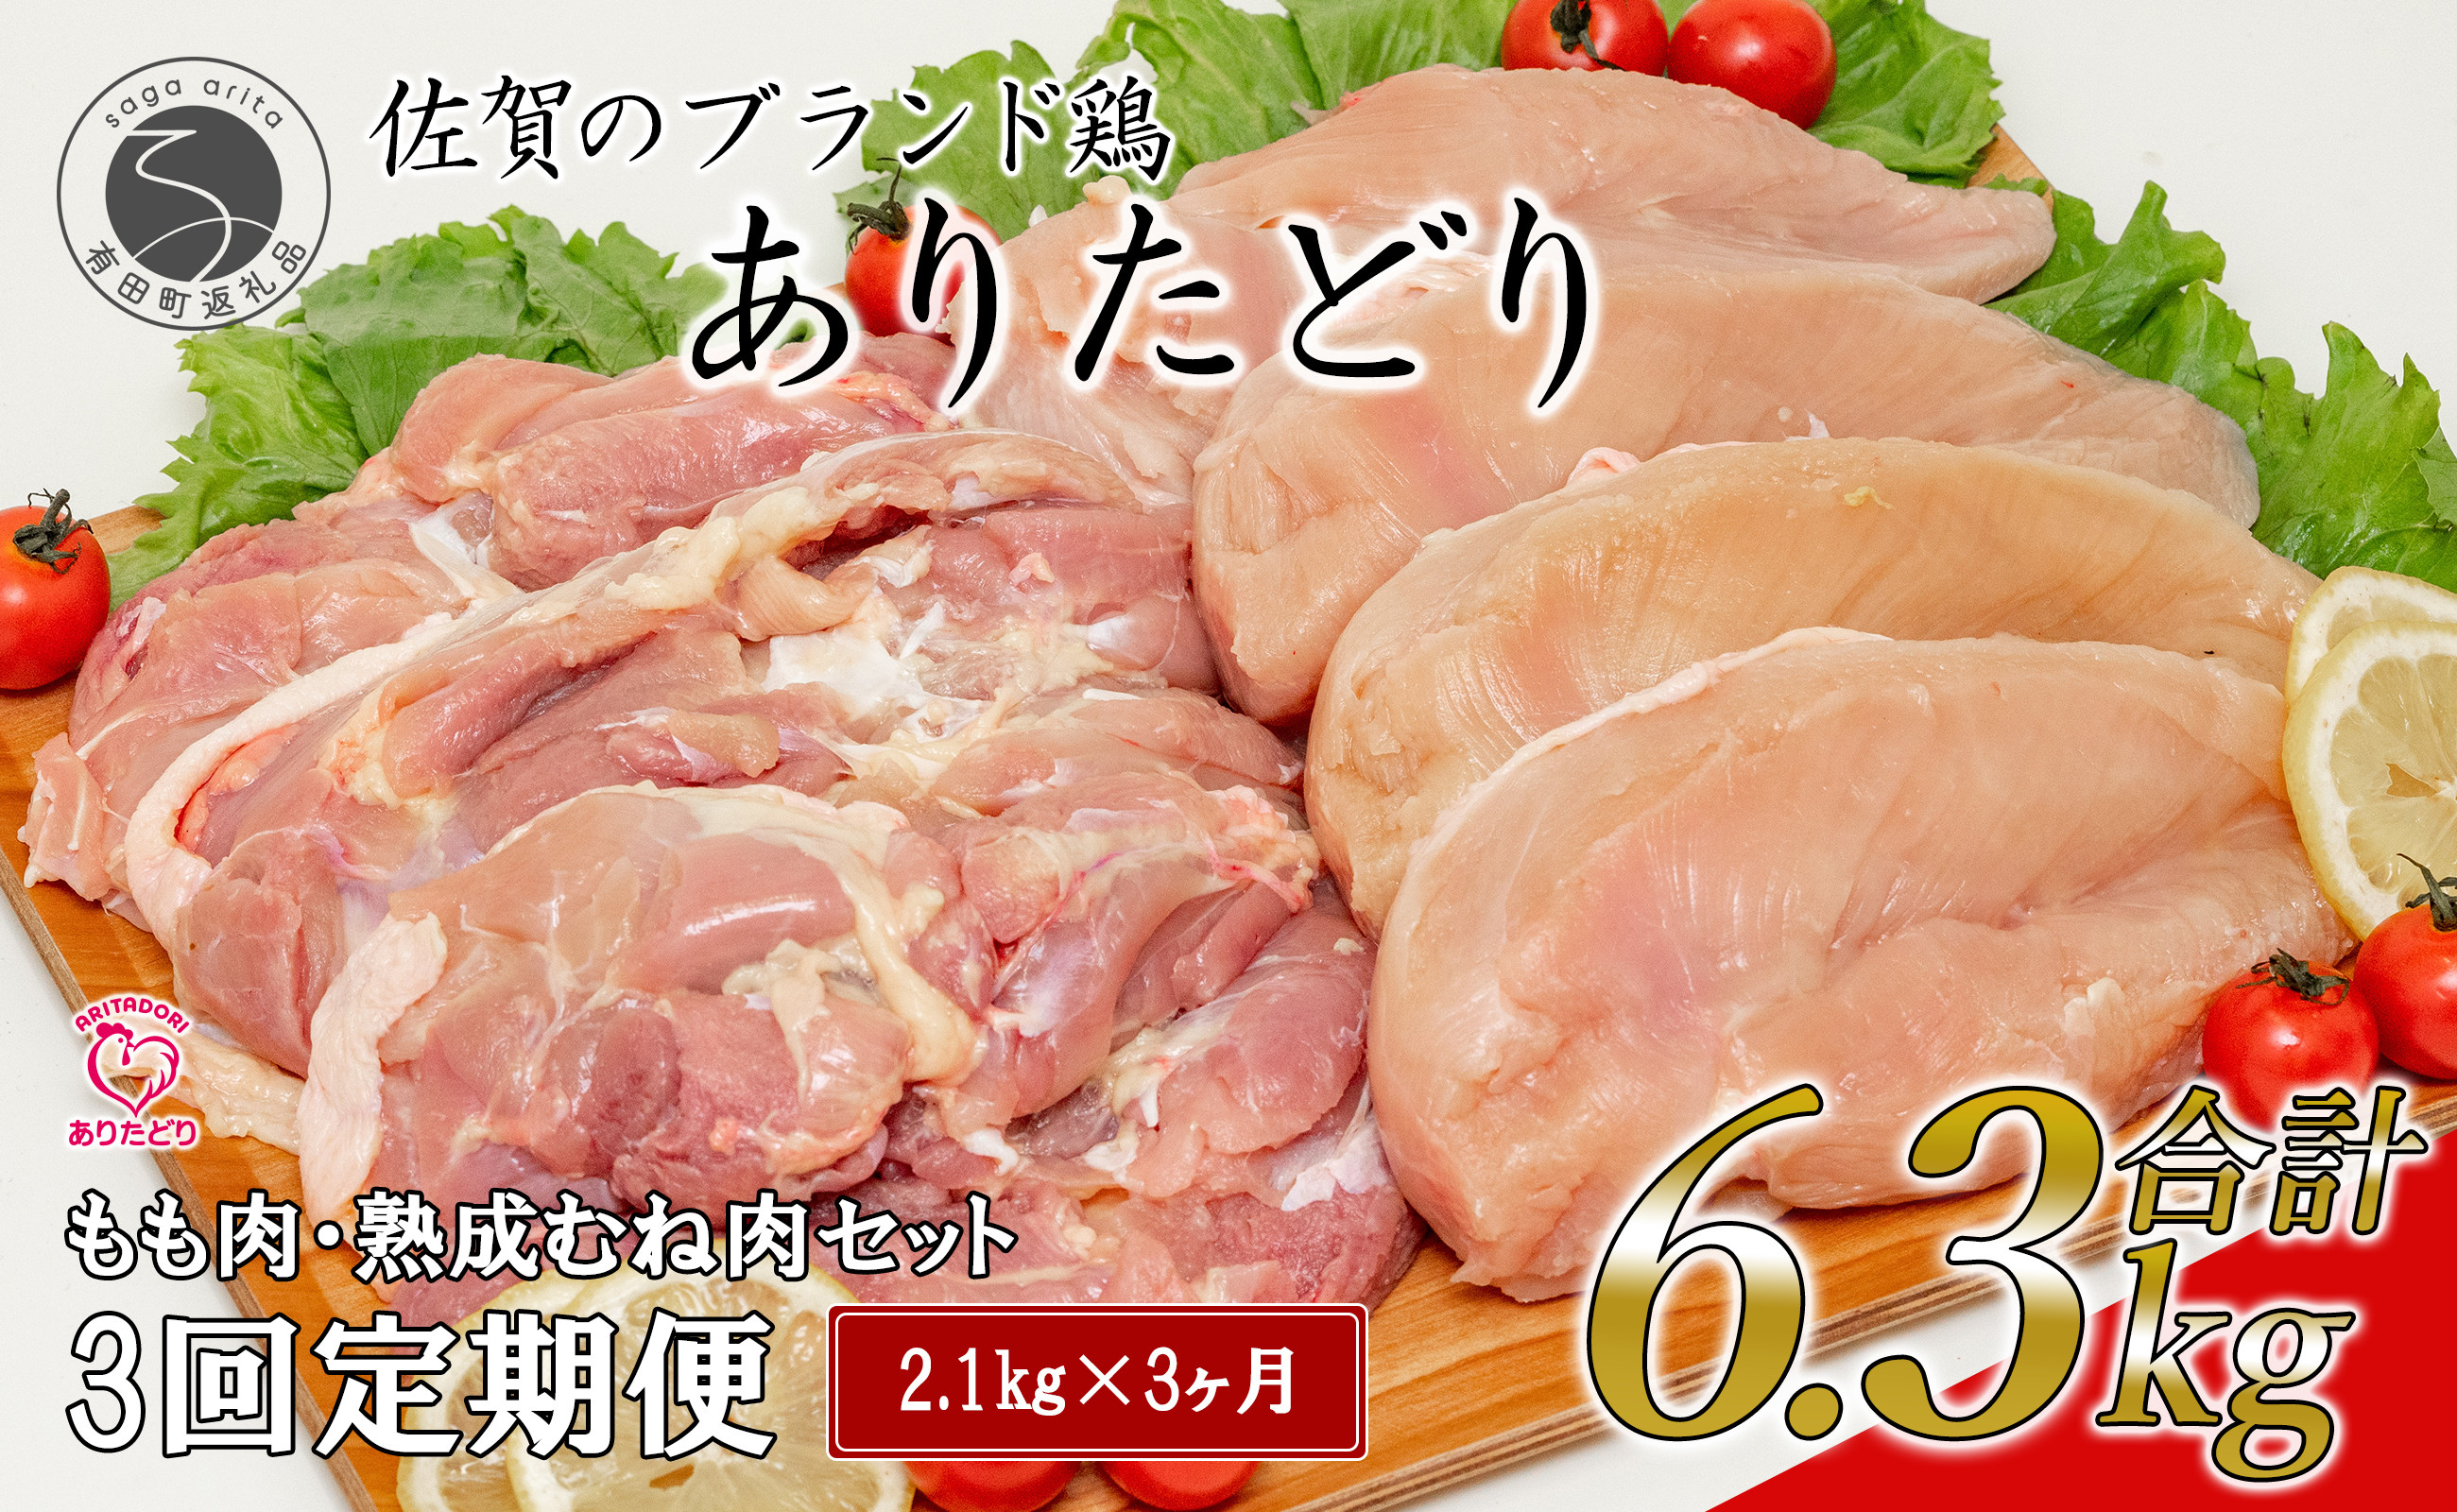 
N35-6 【3回定期便 総計6.3kg】 ありたどり もも肉 熟成むね肉 セット 計2.1kg (300g×7パック) 3回 定期便 鶏肉 むね肉 ムネ肉 胸肉 真空パック
